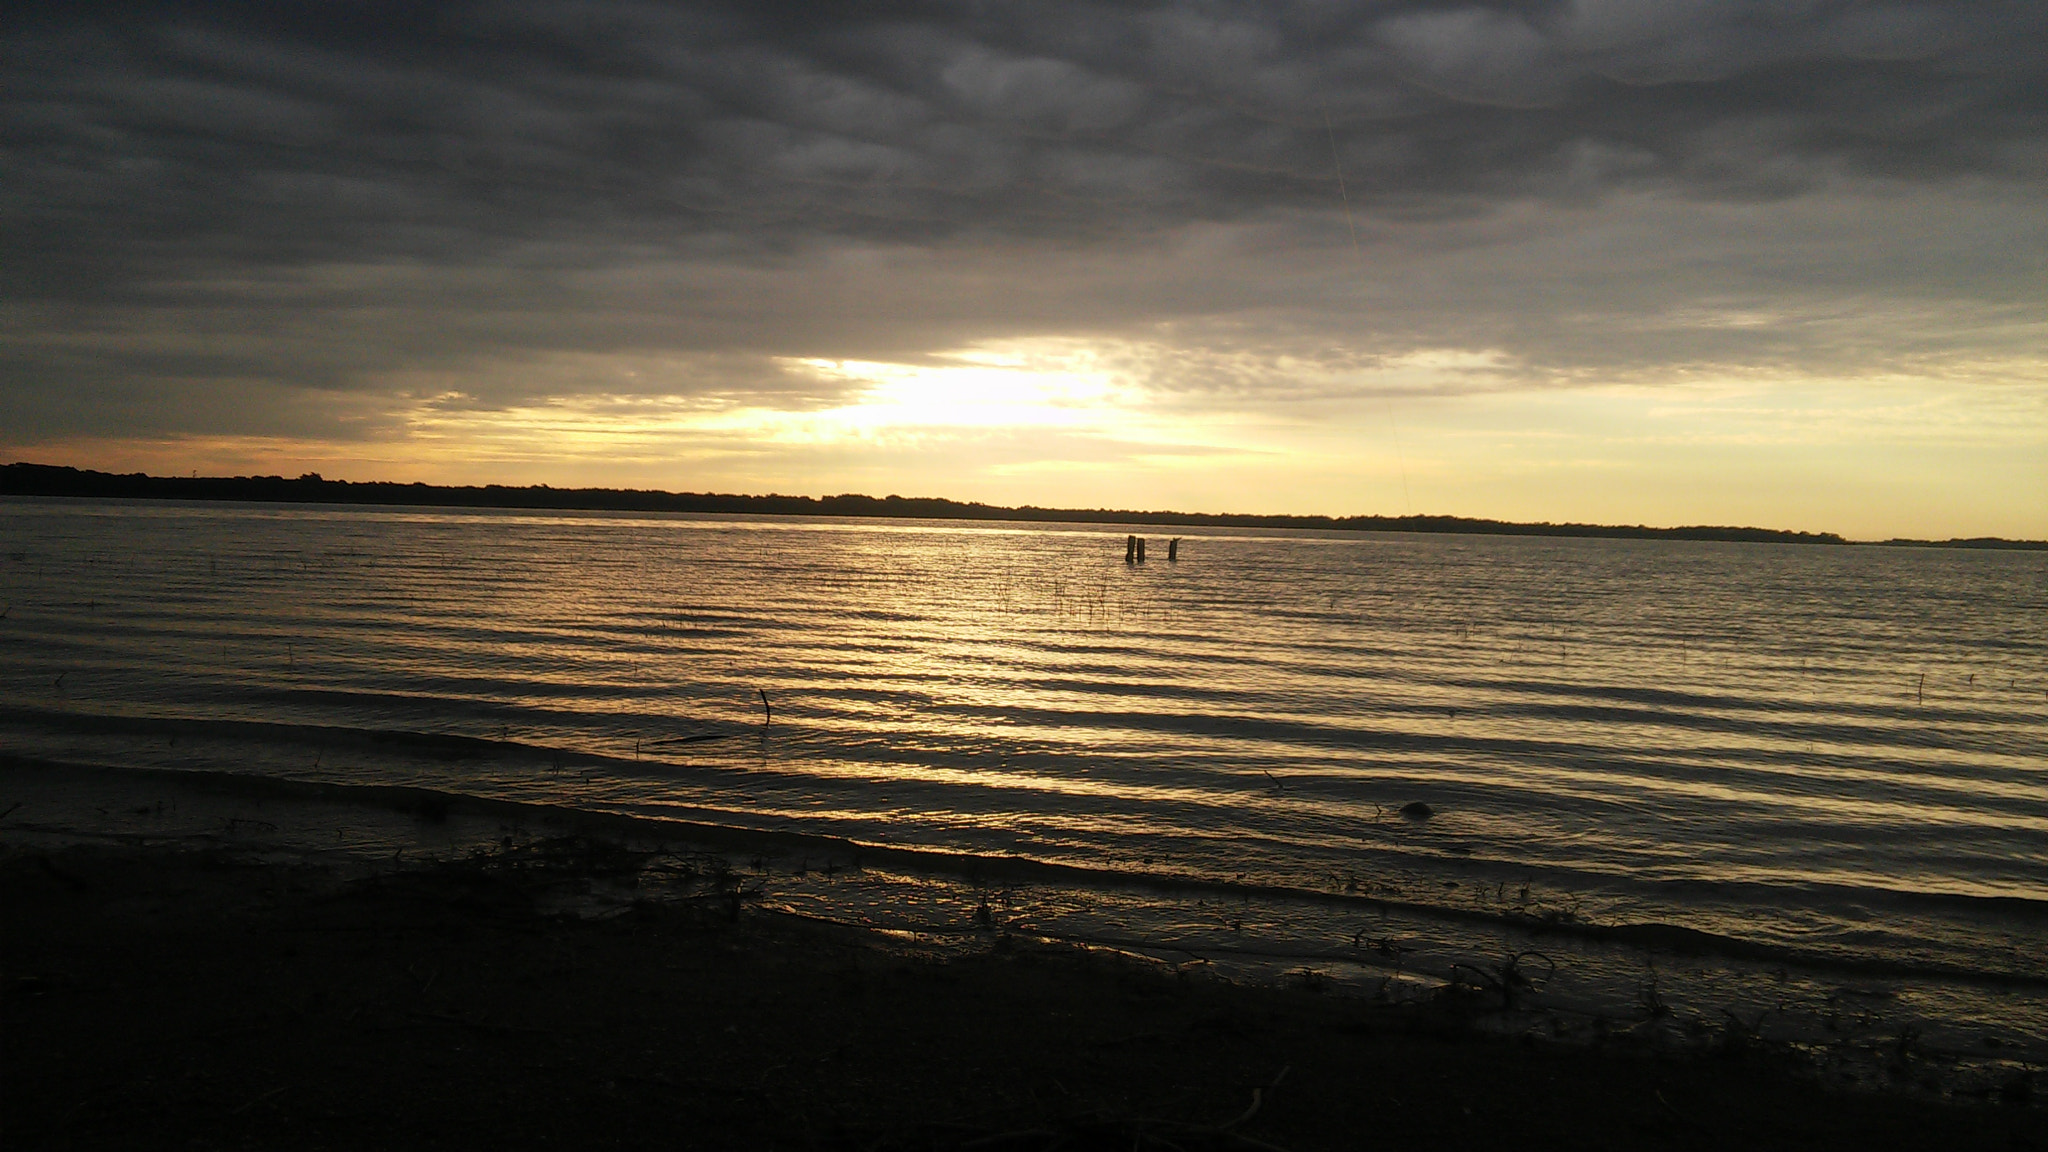 LG G3 Vigor sample photo. Lake sunrise photography